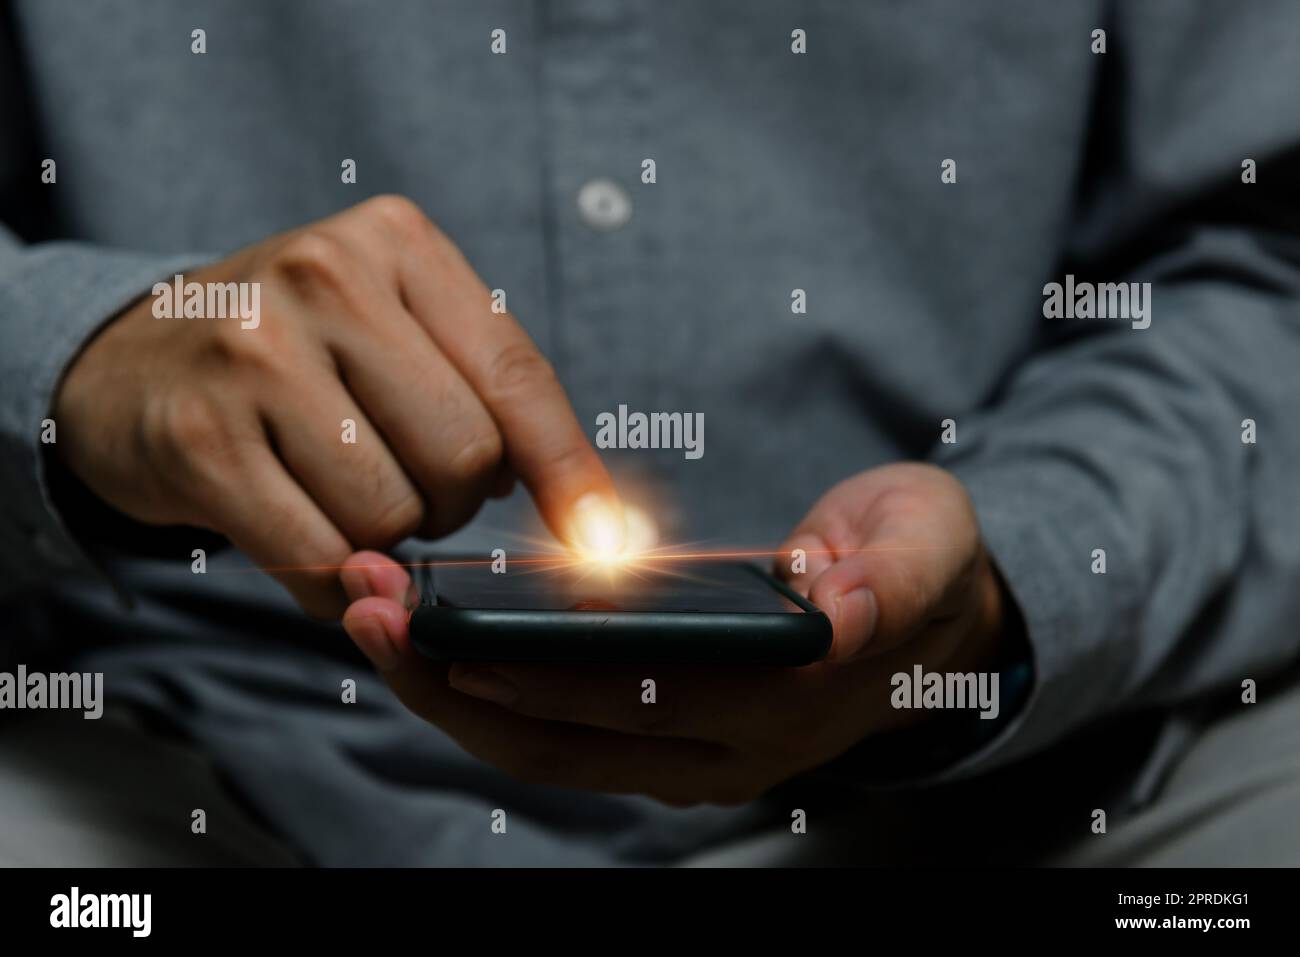 Uomo che utilizza il dito puntino sullo schermo smartphone mobile.Business tecnologia digitale Internet concetto di rete. Foto Stock